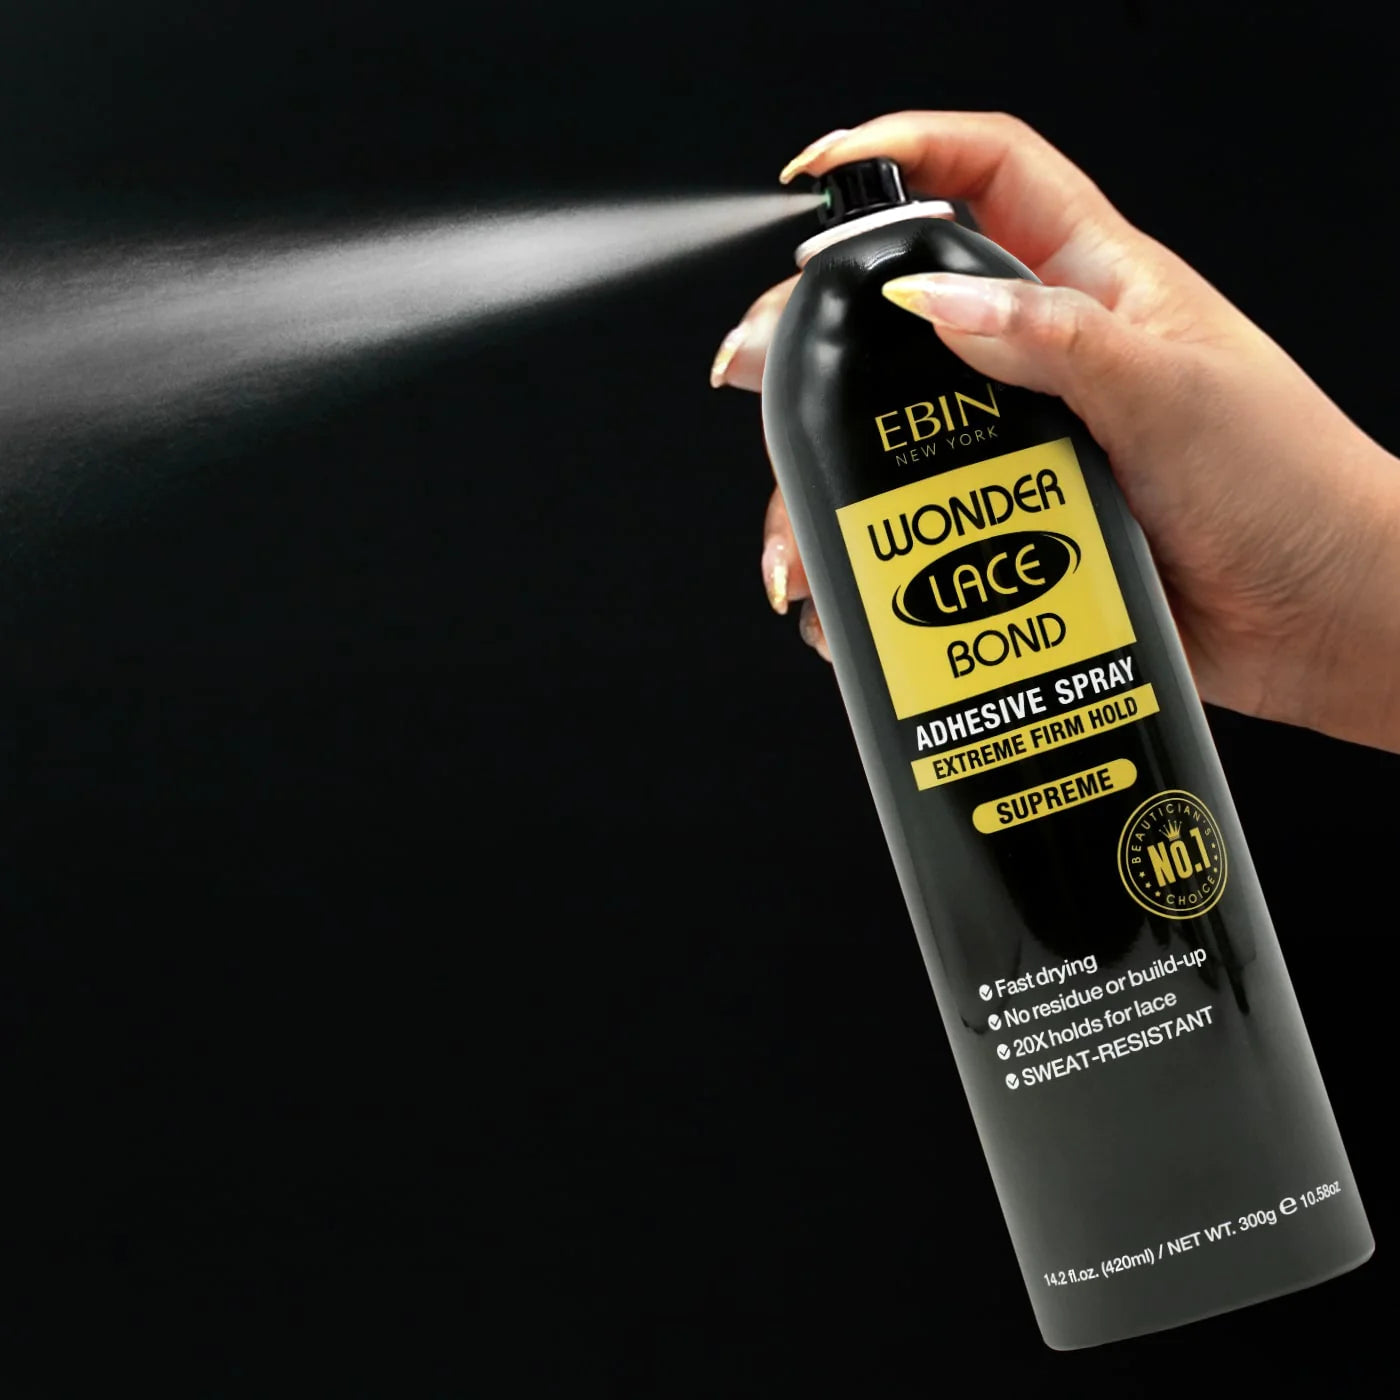 Ebin Lace Bond Spray 2.1 oz